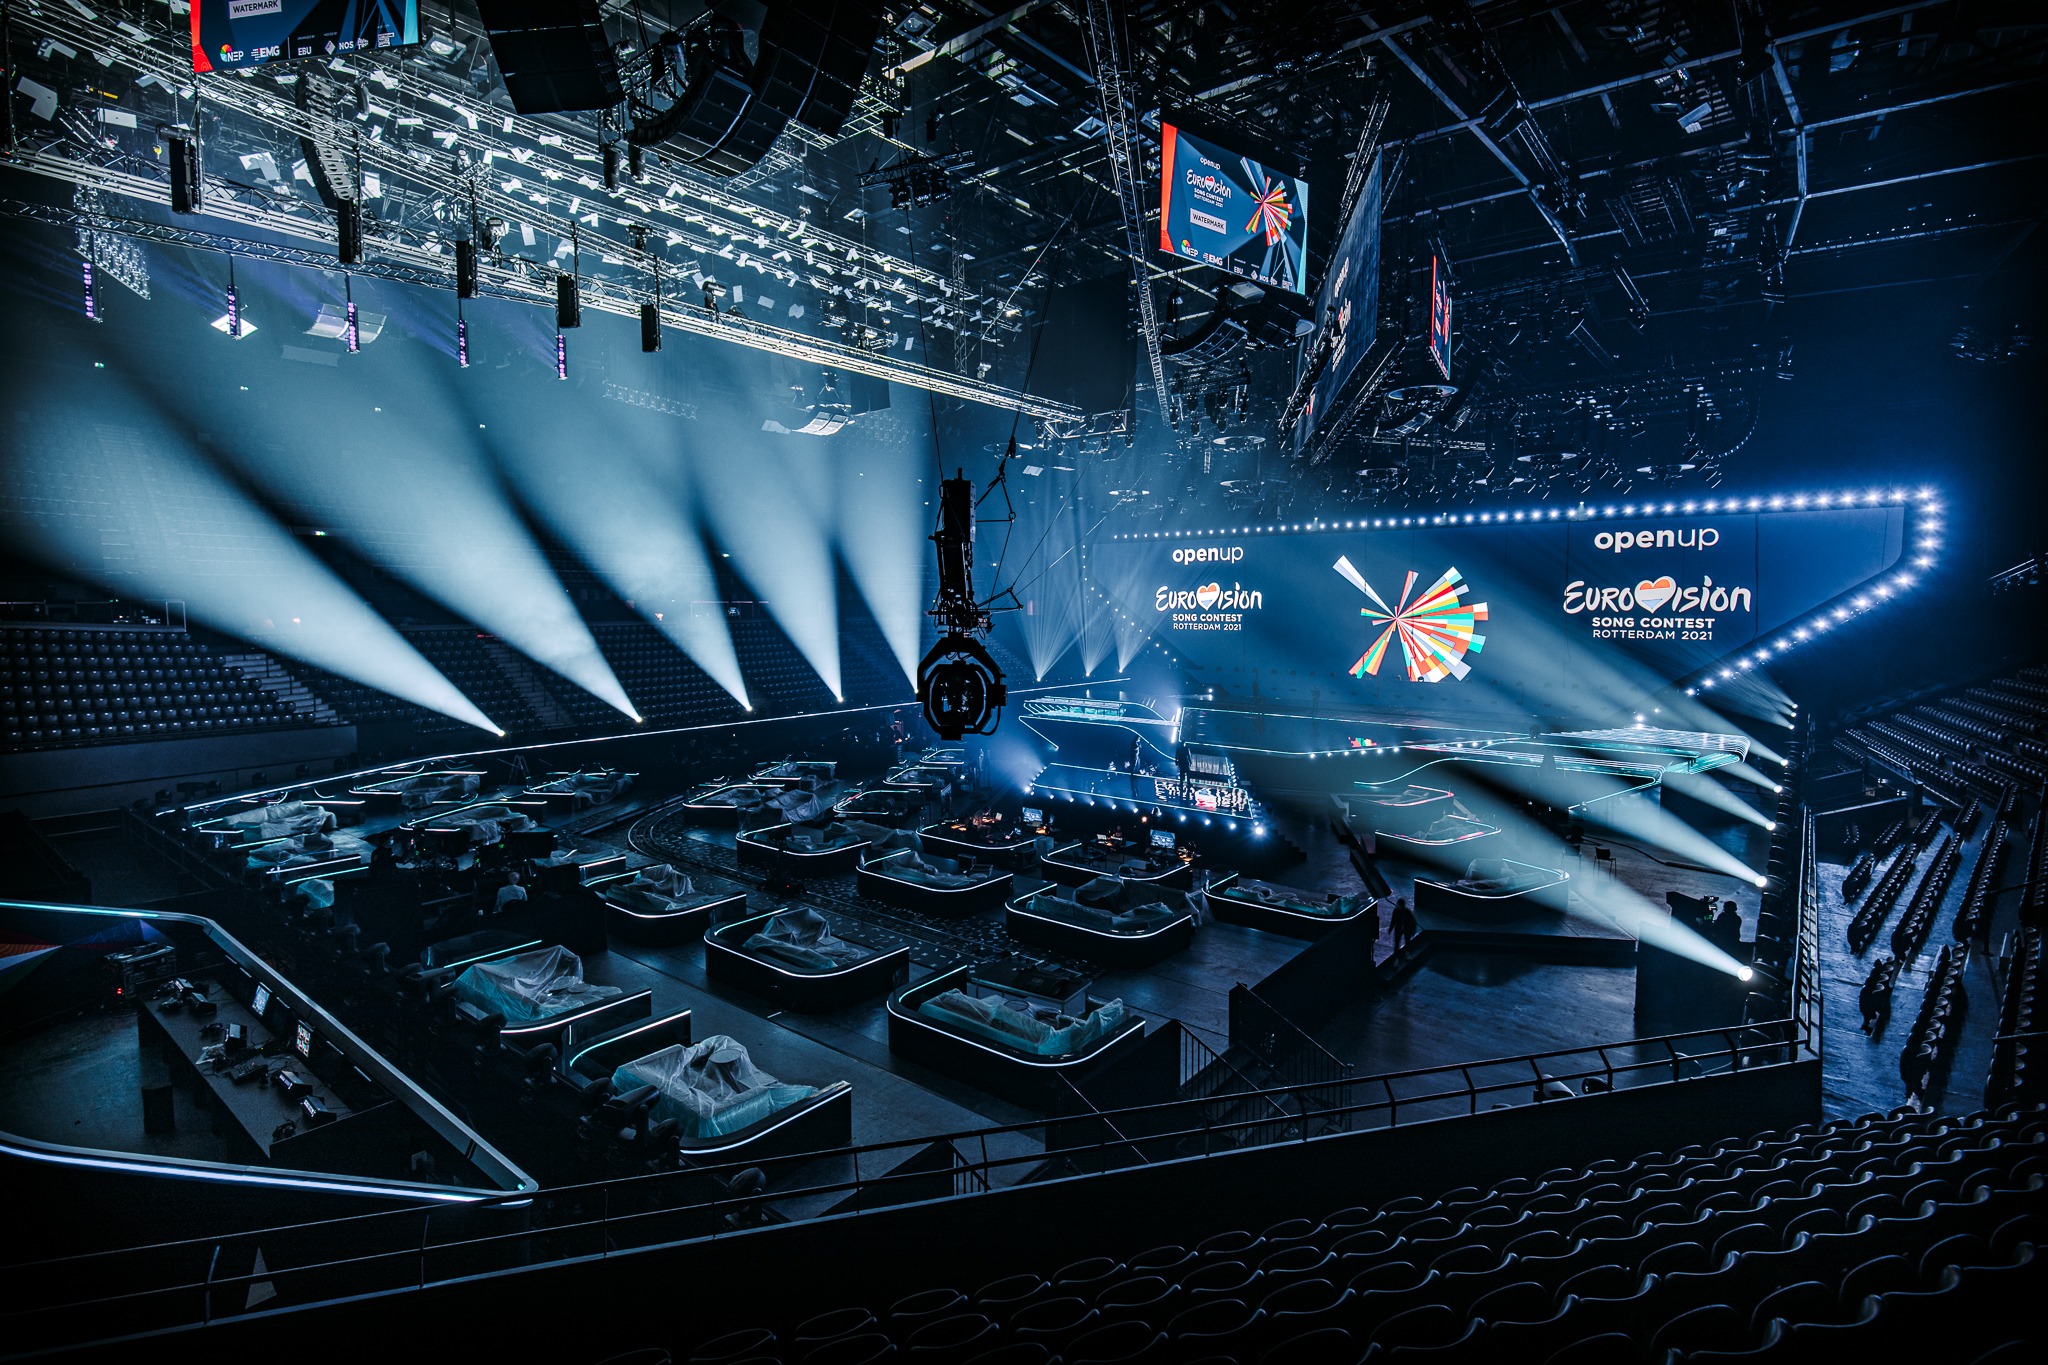 A 2021-es Eurovíziós Dalfesztivál színpada Rotterdamban - Nathan Reinds (EBU) fotója